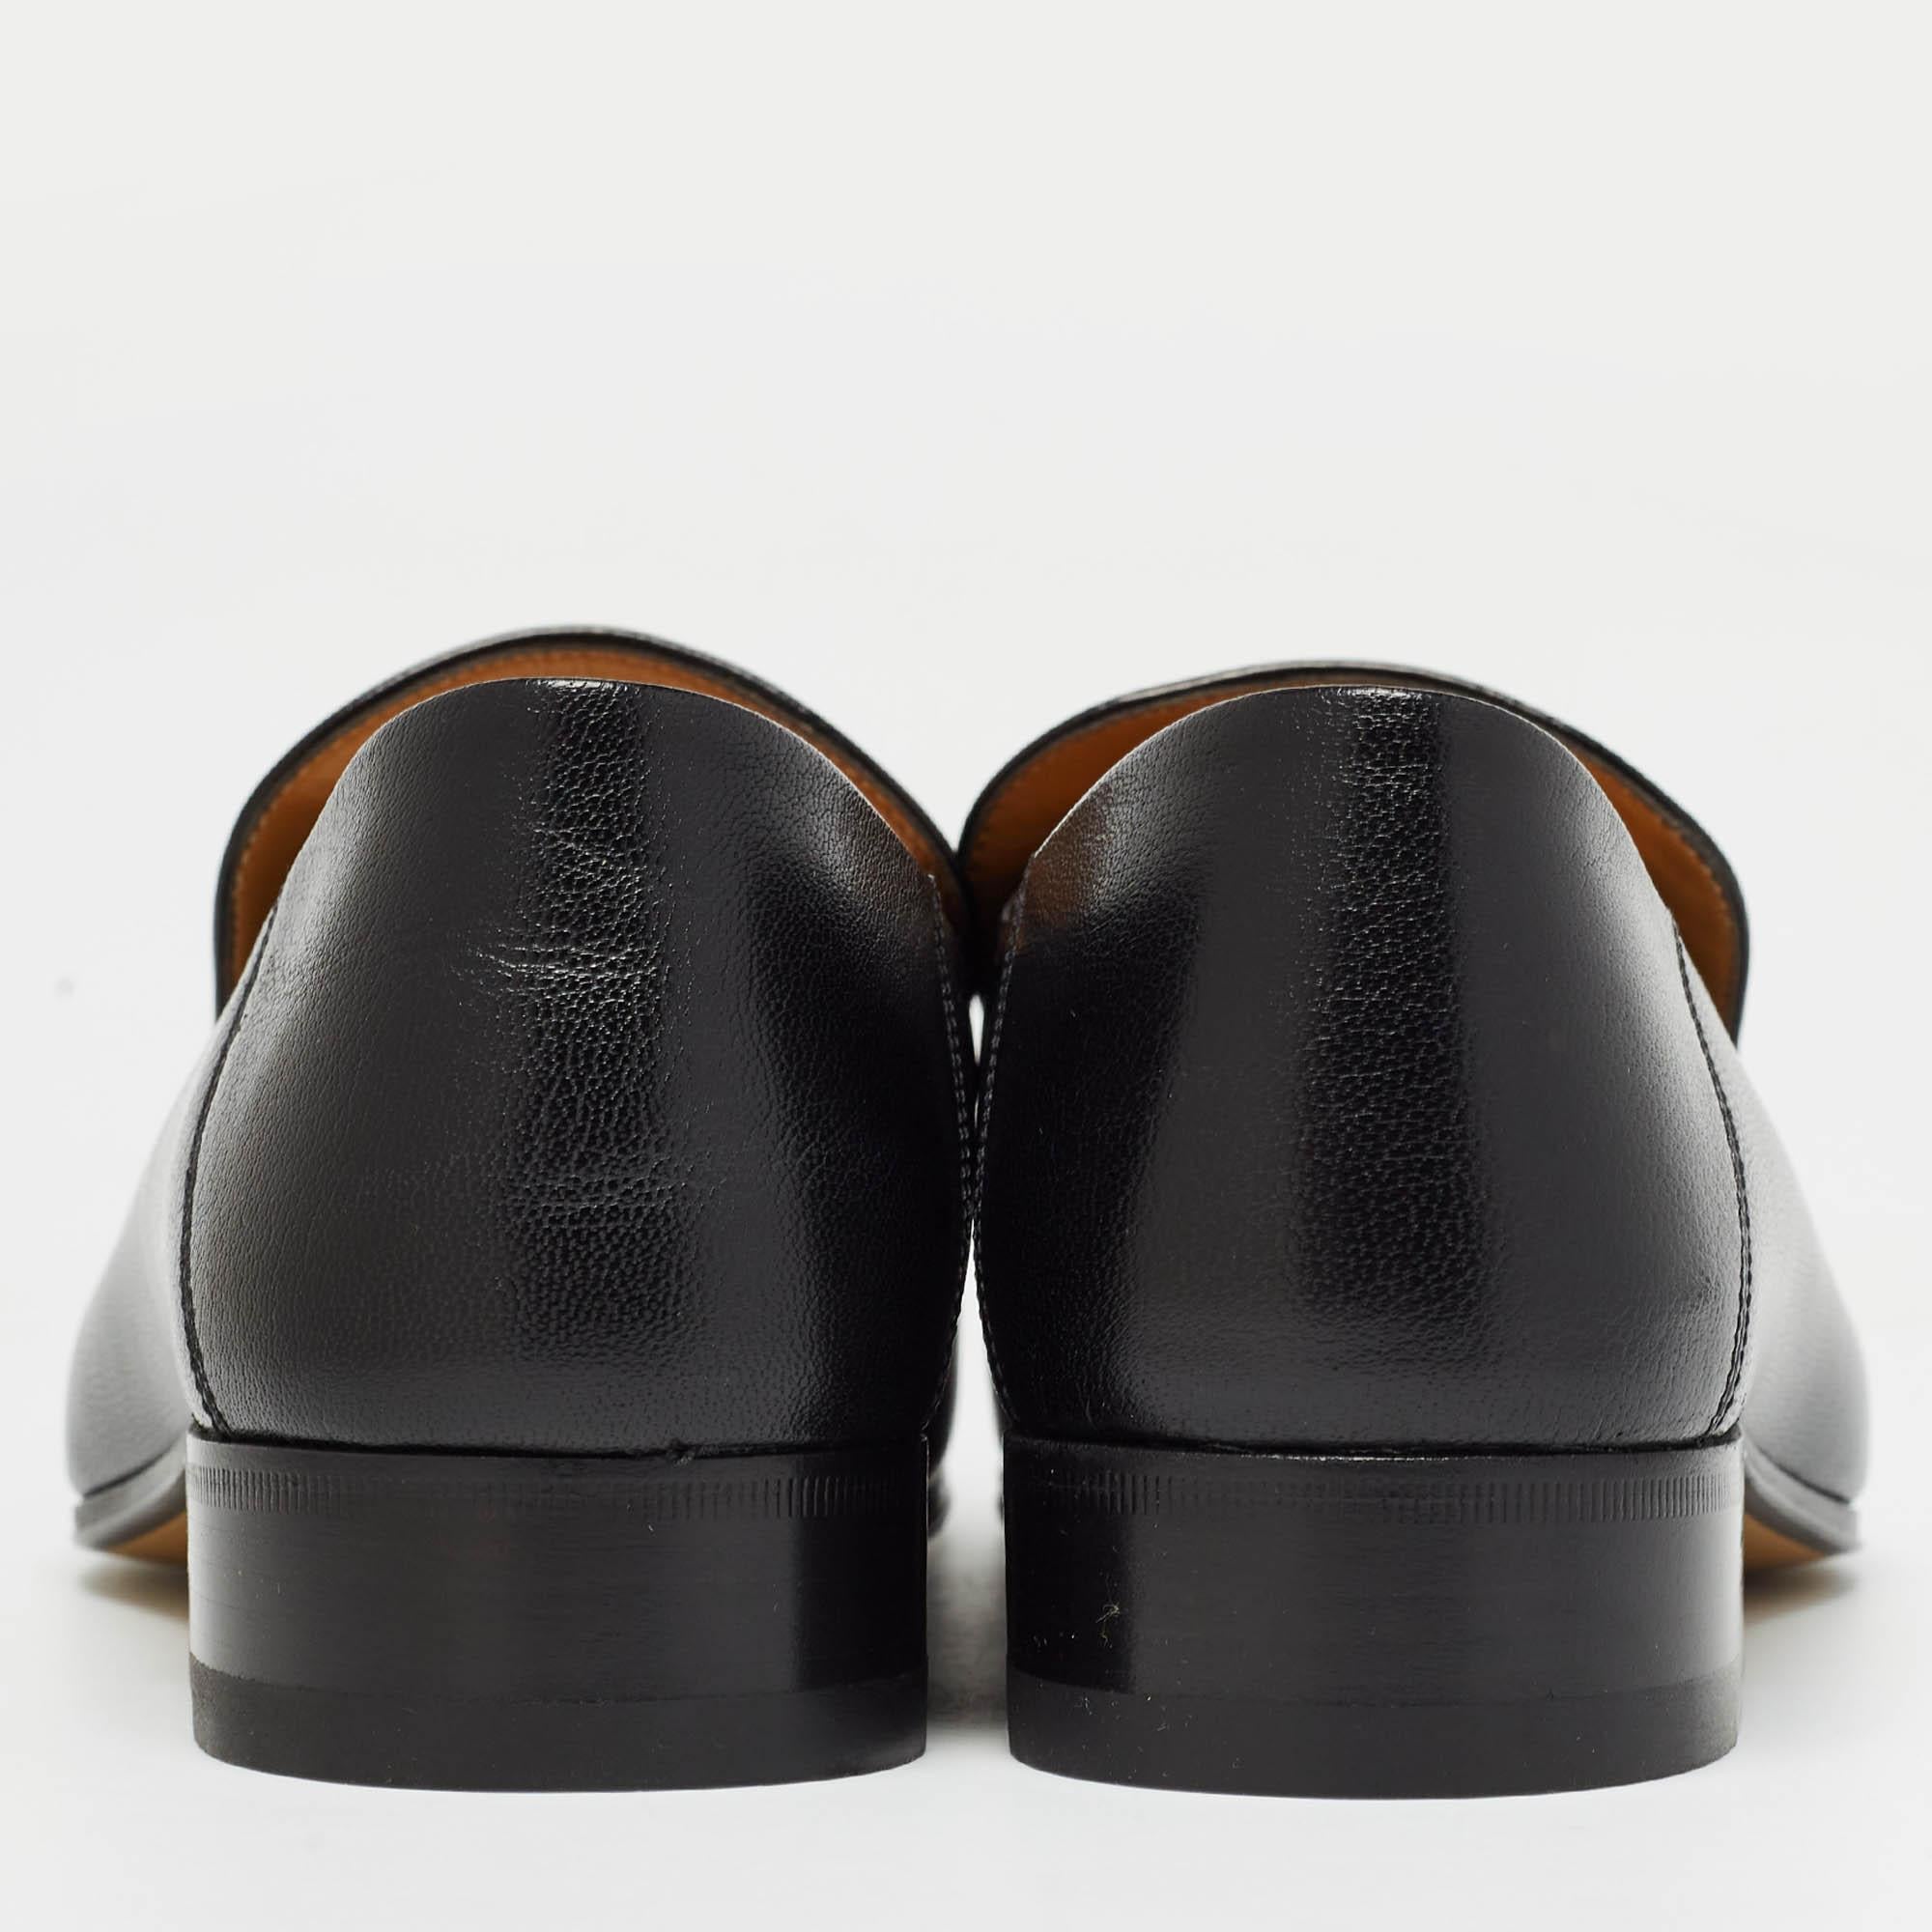 Diese Loafers von Gucci sind aus klassischem schwarzem Leder gefertigt und fallen einfach auf! Sie zeichnen sich durch eine runde Zehensilhouette mit den ikonischen Horsebit-Akzenten in Goldtönen auf dem Vorderblatt aus. Diese faltbaren Loafer sind